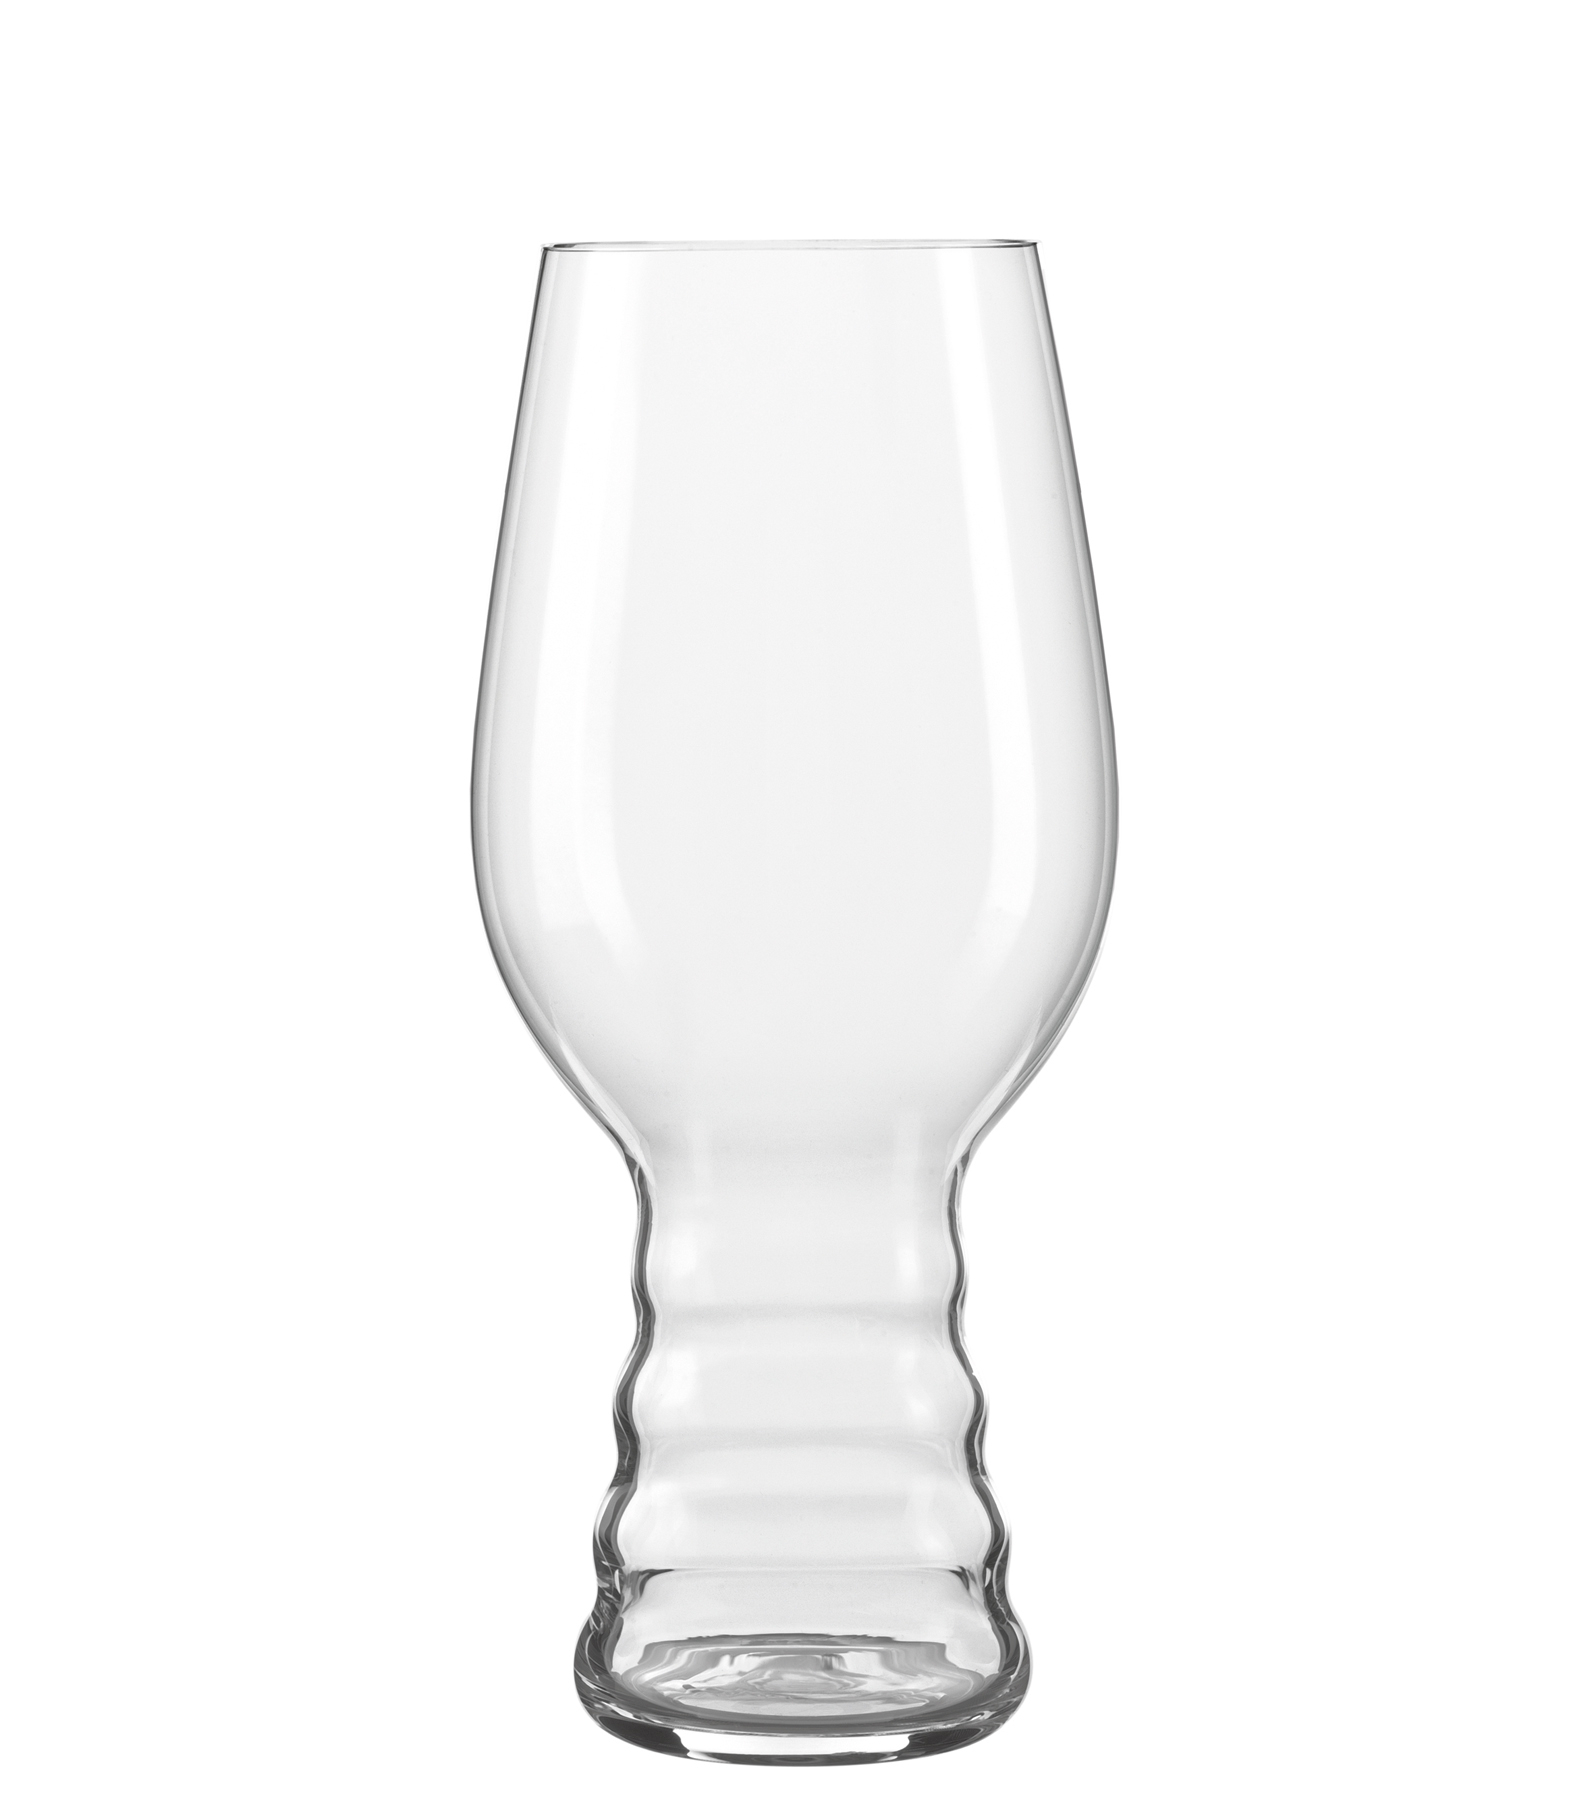 IPA glass Craft Beer, Spiegelau - 540ml